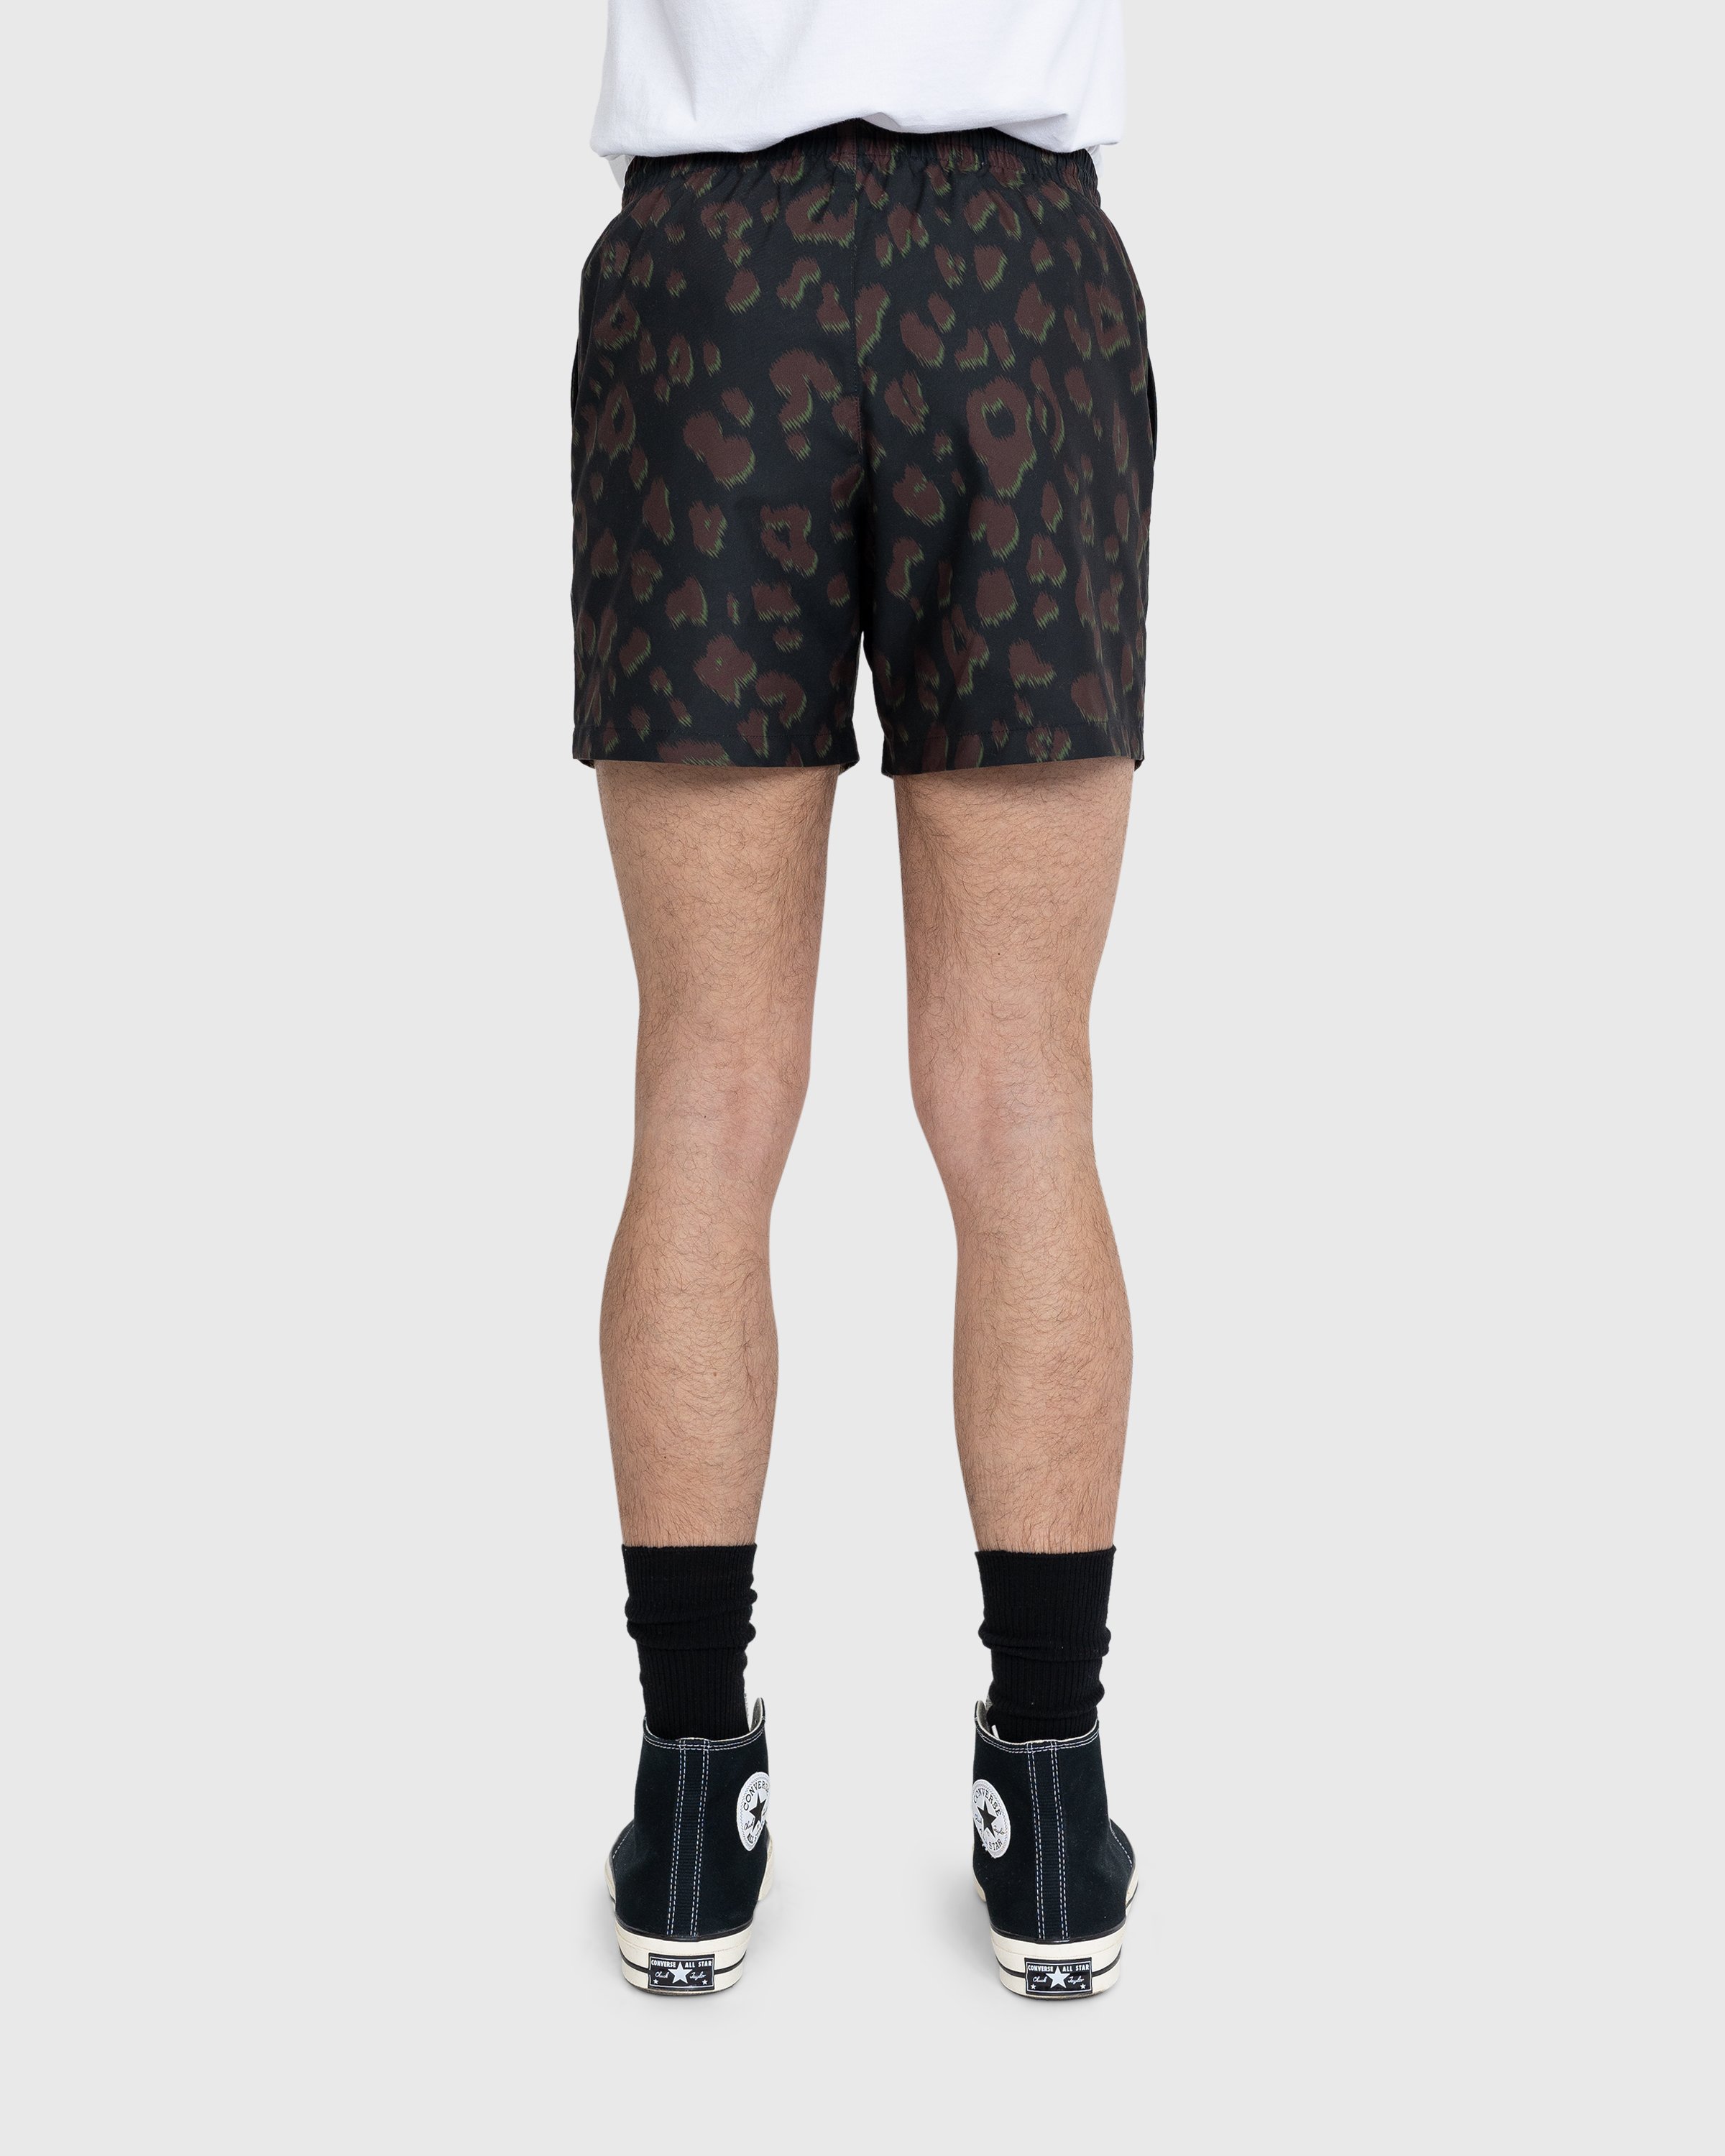 Dries van Noten - Phibbs Shorts - Clothing - Black - Image 4